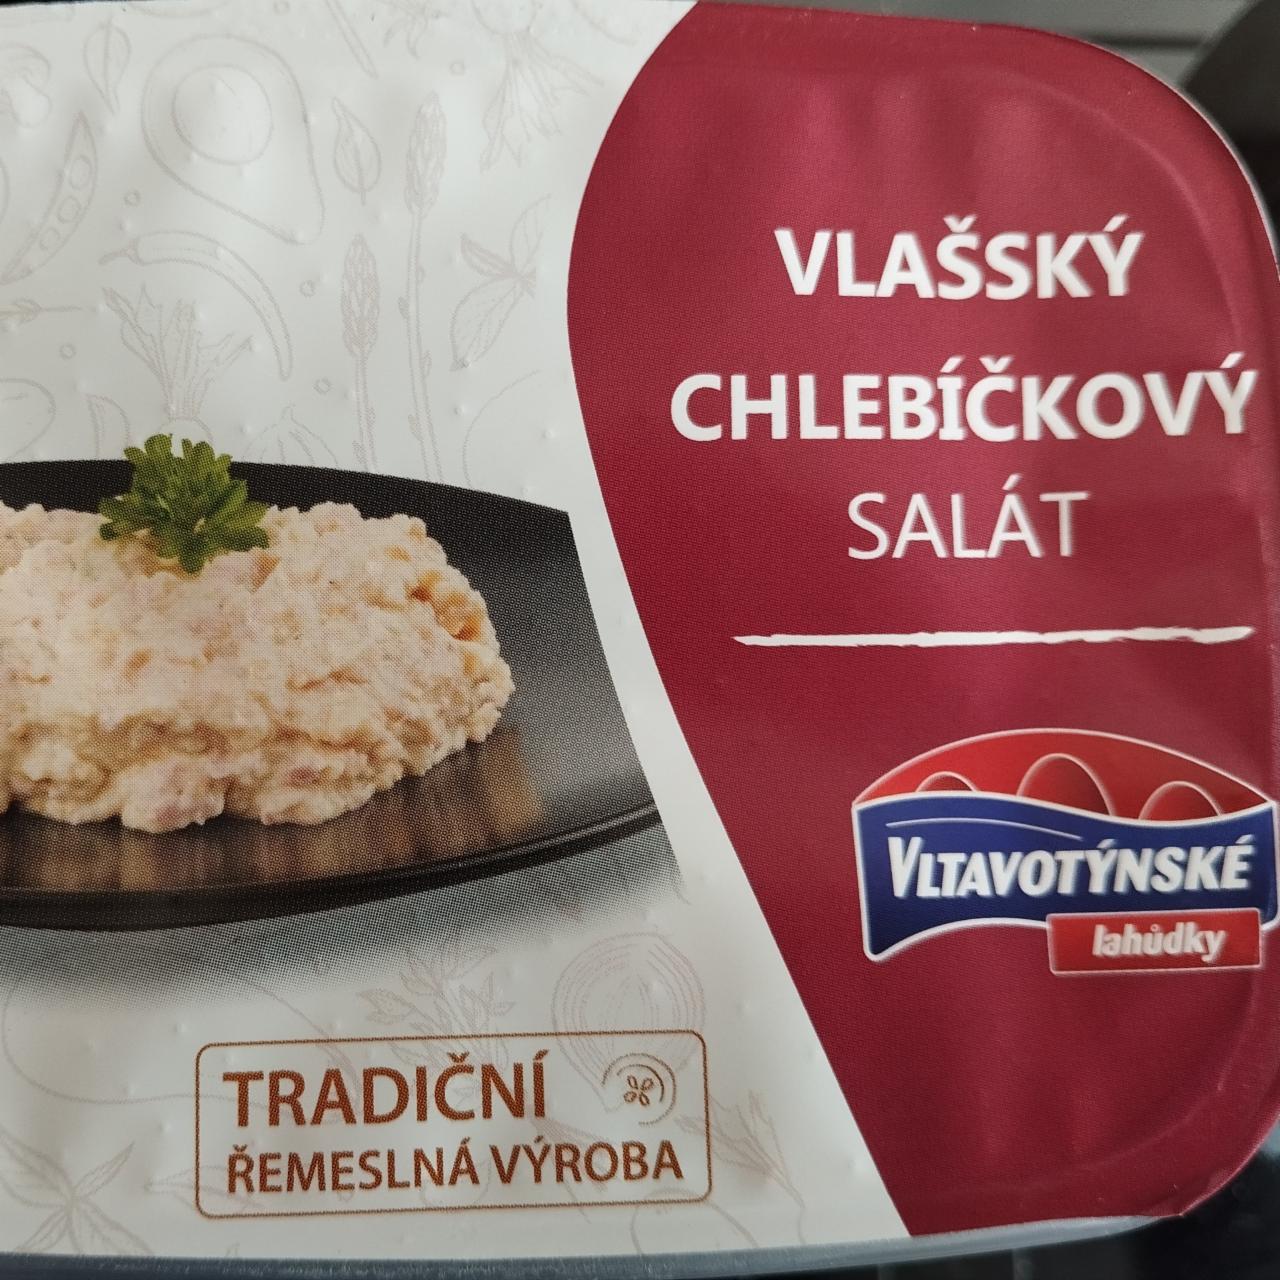 Fotografie - Vlašský chlebíčkový salát Vltavotýnské lahůdky